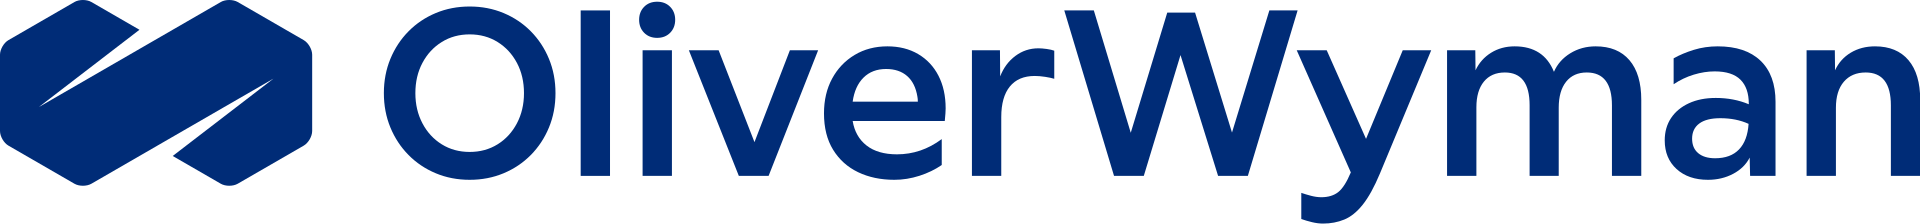 Oliver Wyman Brand Logo